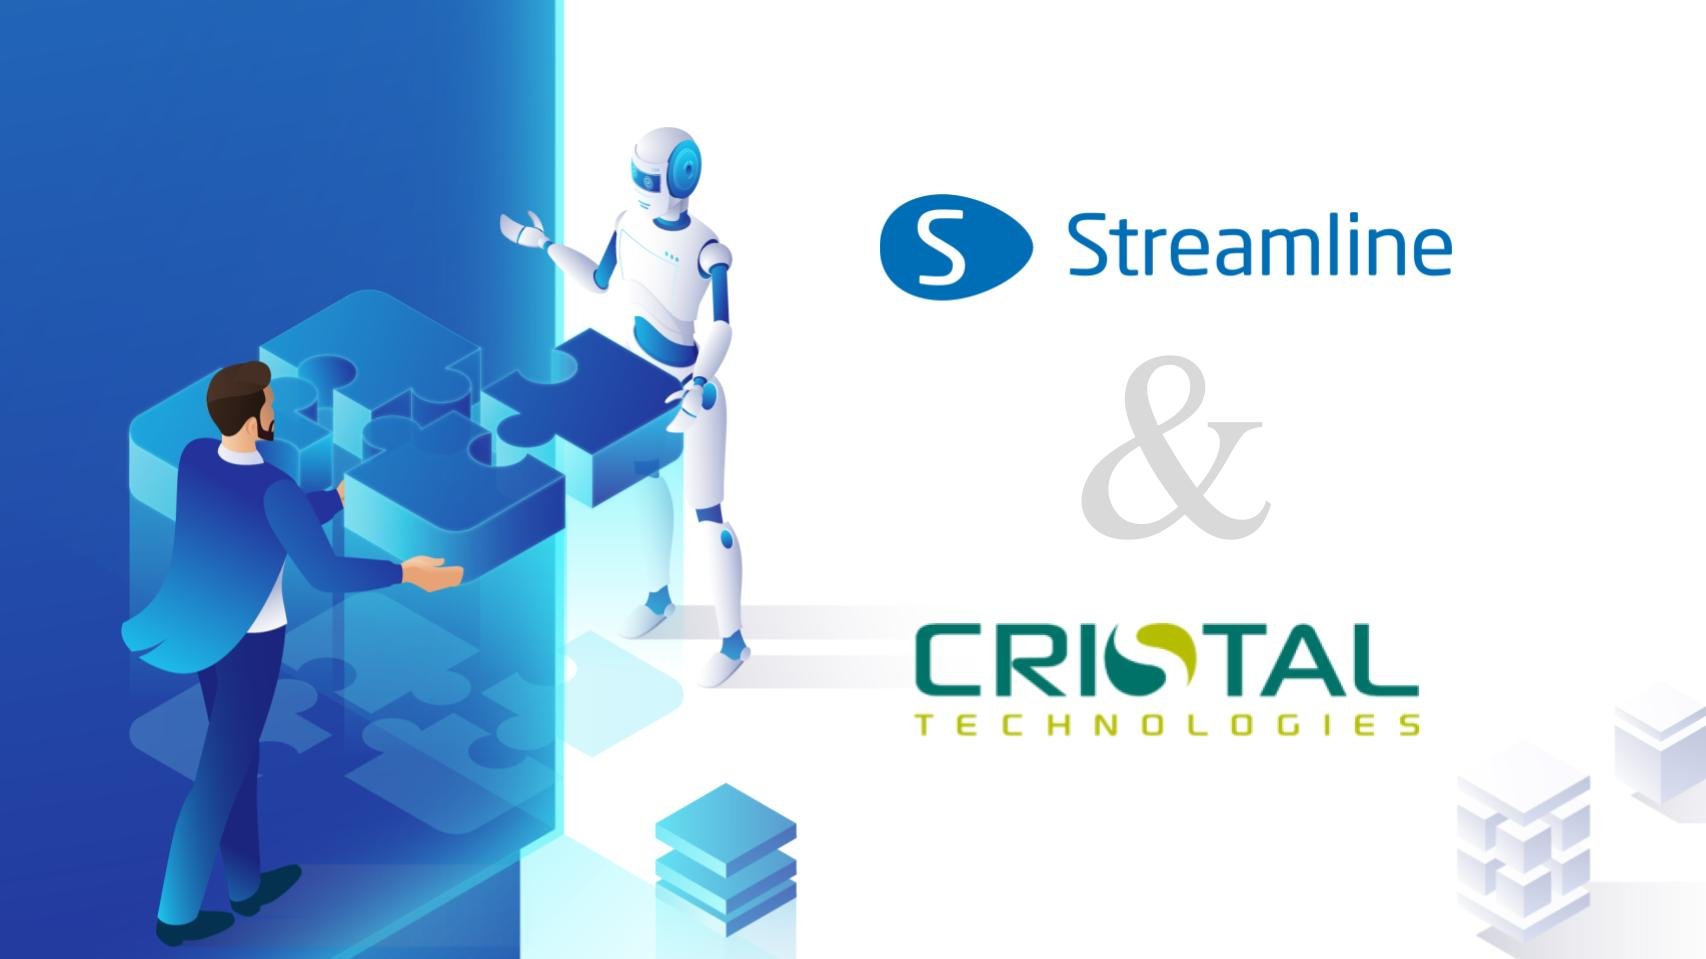 GMDH Streamline e Cristal Technologies anunciam parceria estratégica